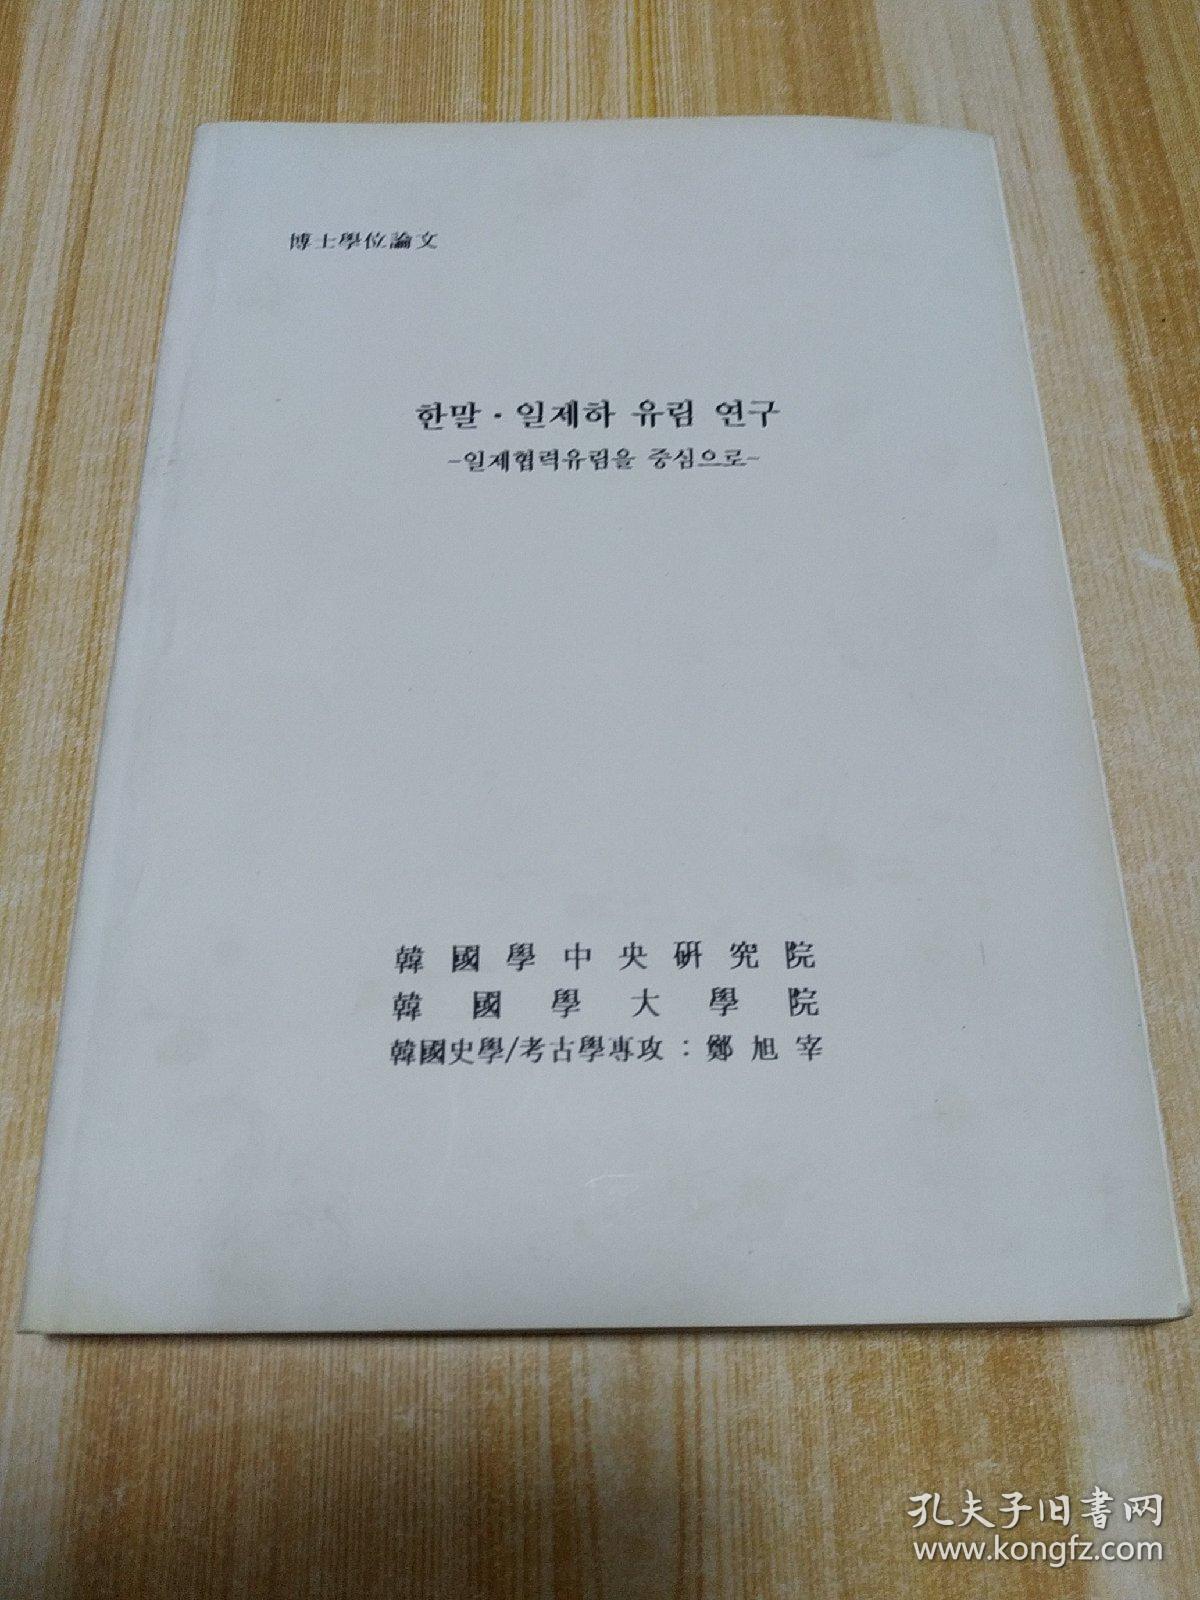 한말. 일제하유림연구 (朝鲜文)